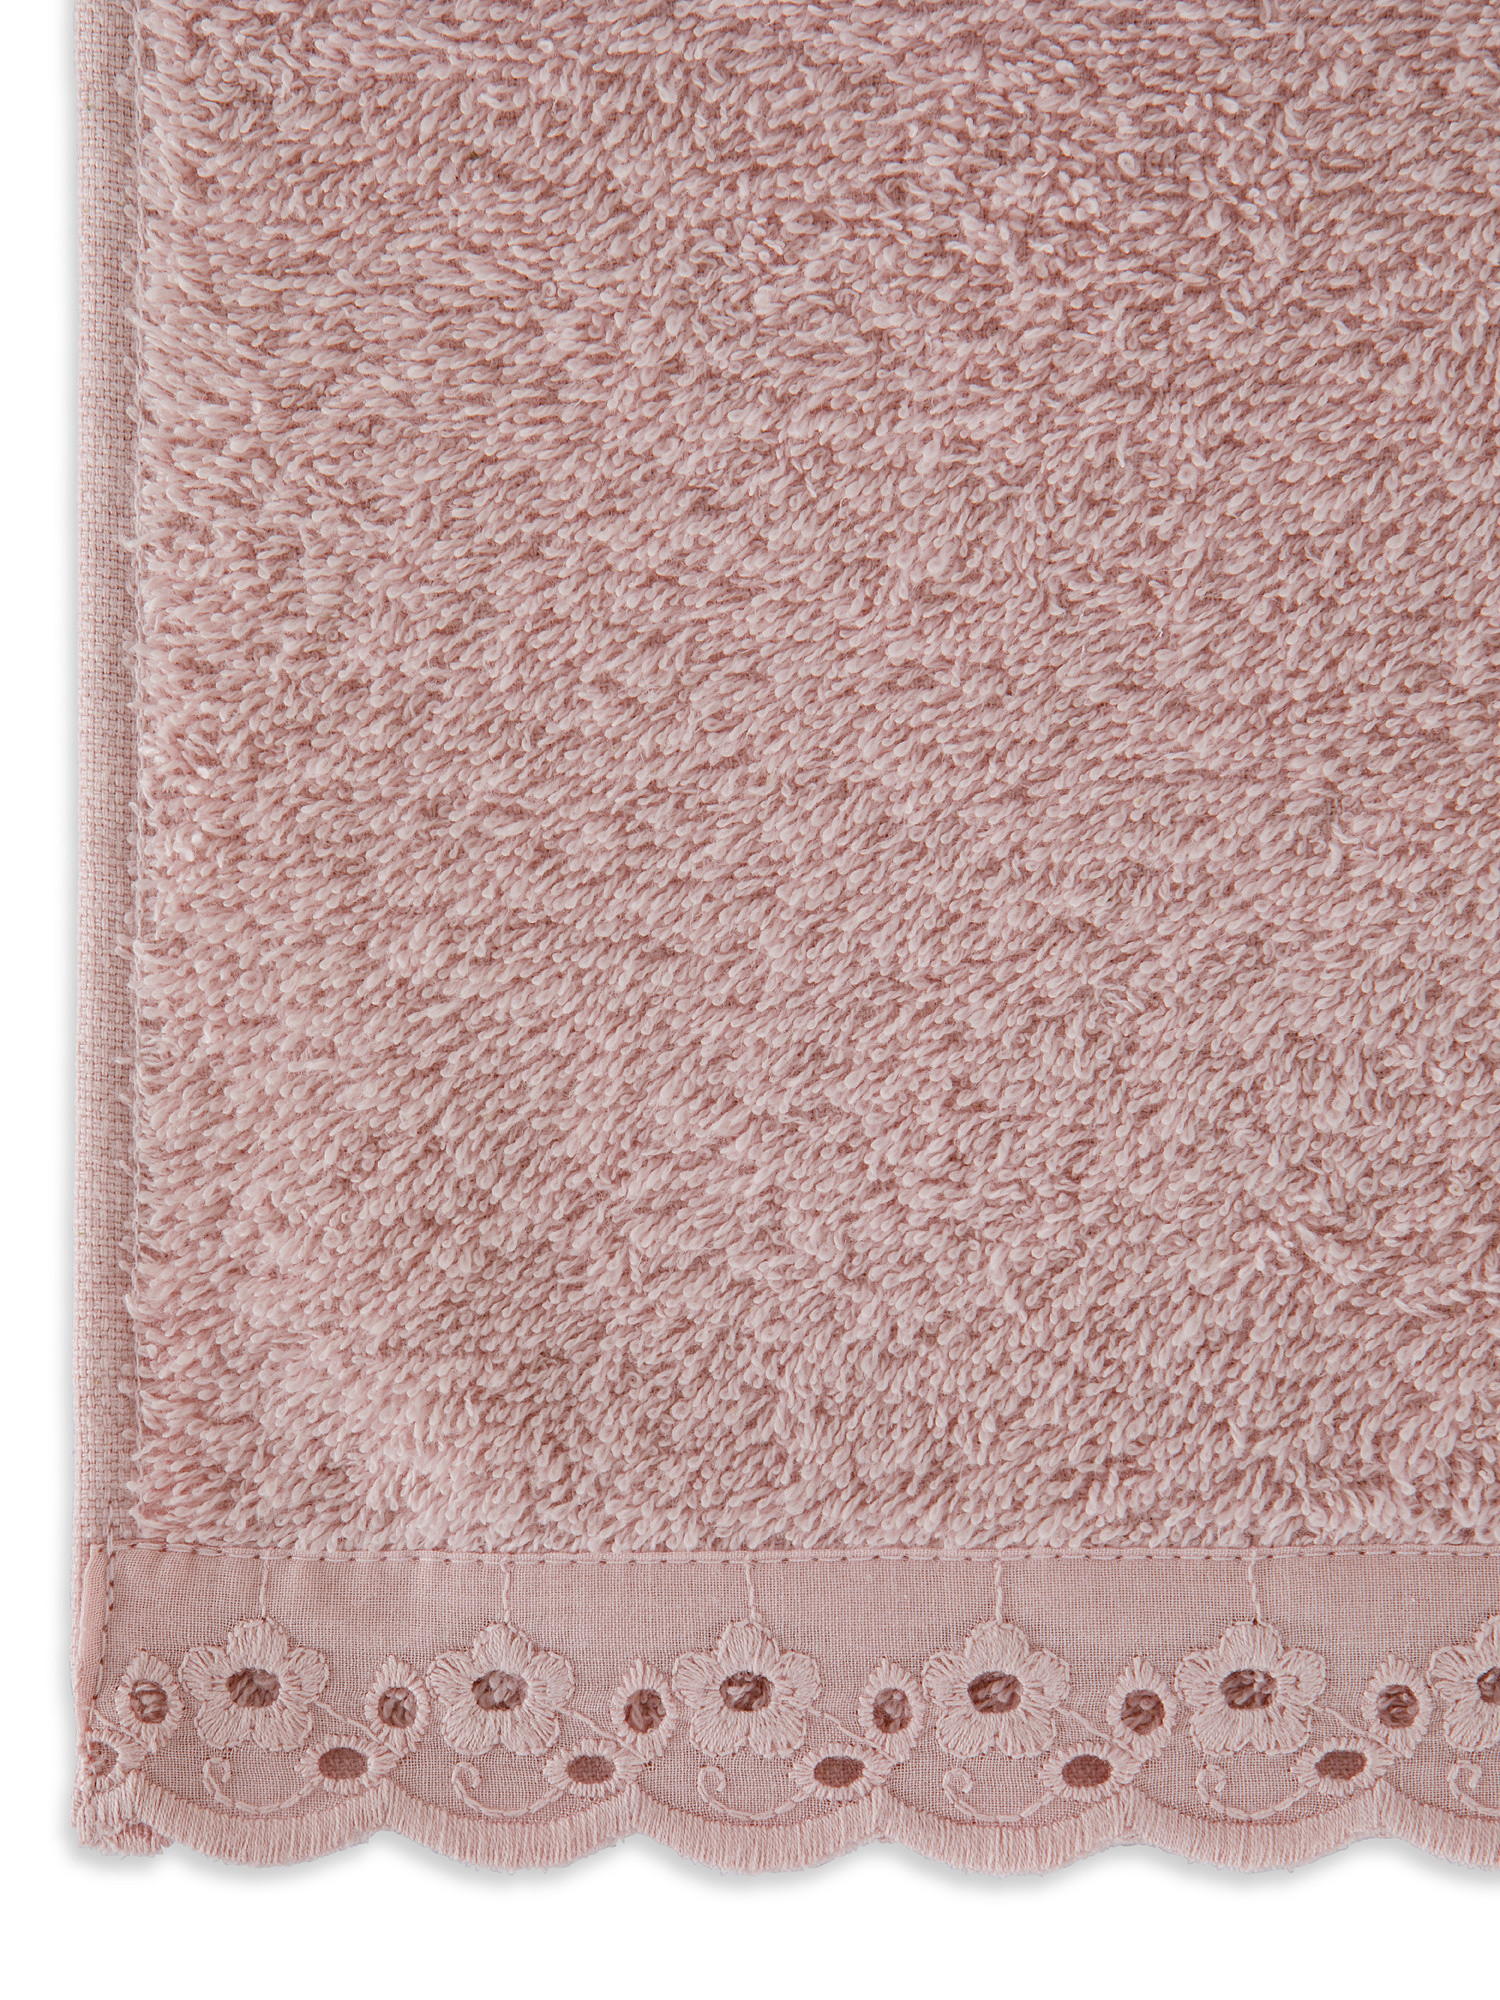 Asciugamano spugna di cotone bordo sangallo, Rosa chiaro, large